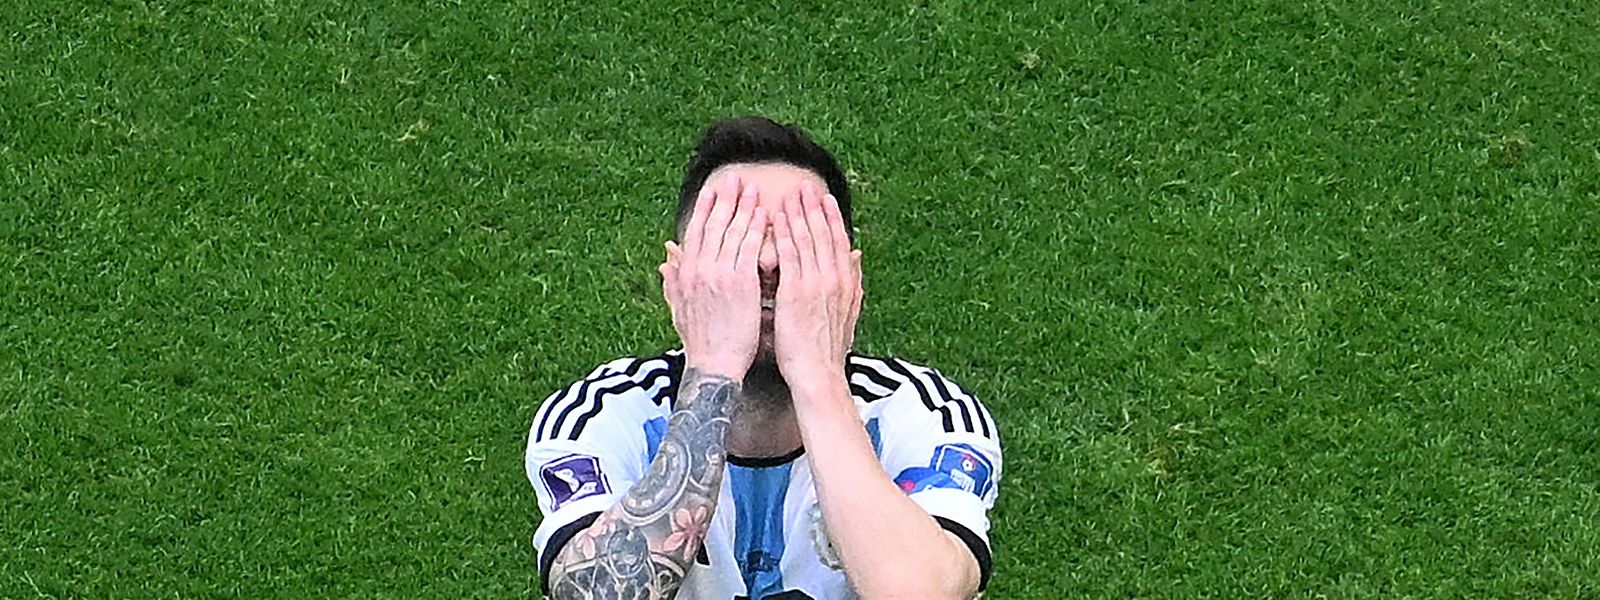 Messi desapontado após o final do jogo que ditou a derrota da Argentina frente à Arábia Saudita.